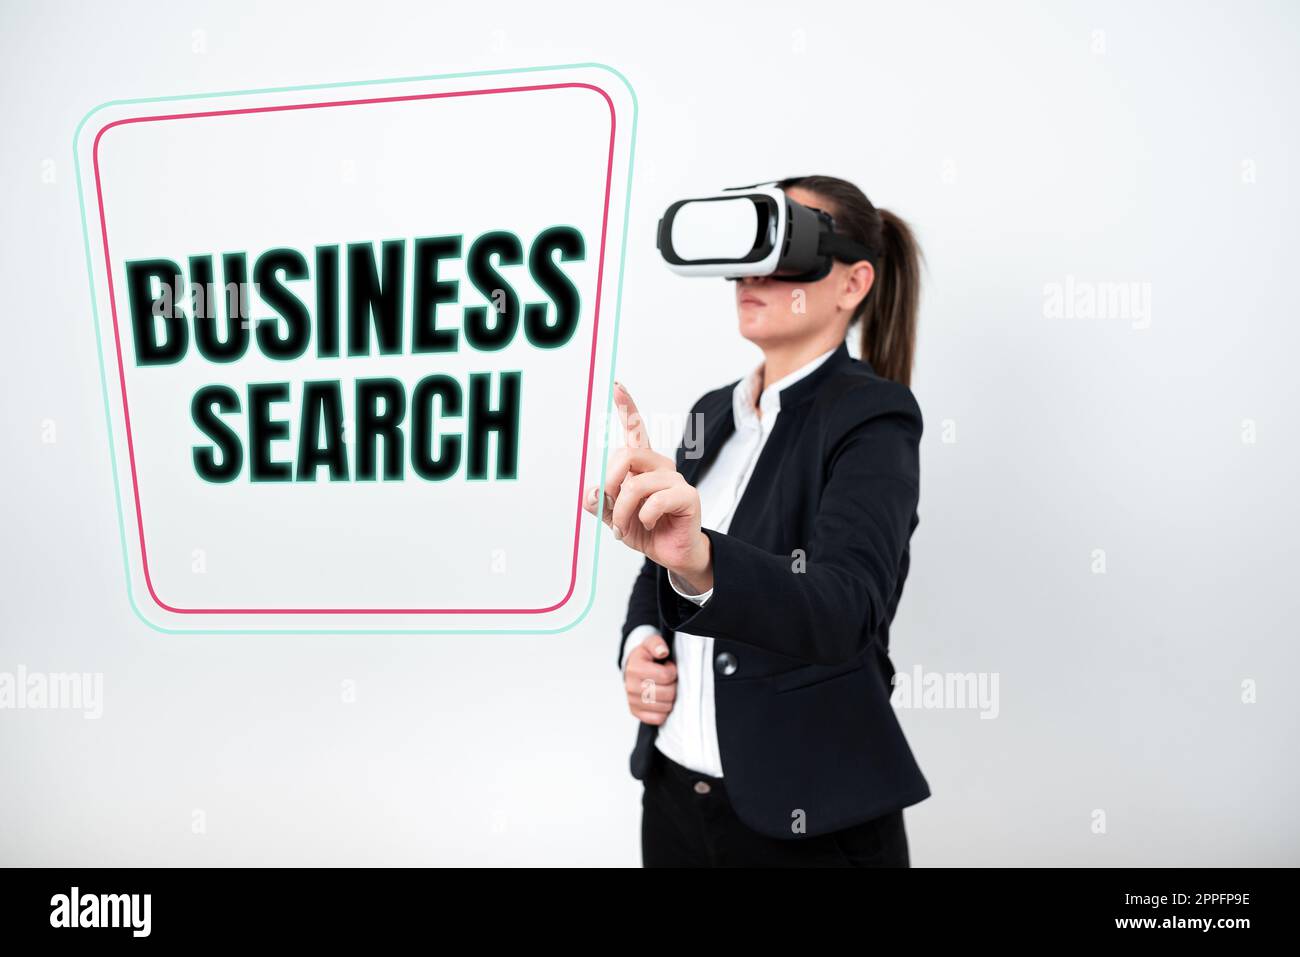 Handschriftlicher Text Business Search. Konzept bedeutet, dass man nach wertvollen Informationen über ein Unternehmen sucht Stockfoto